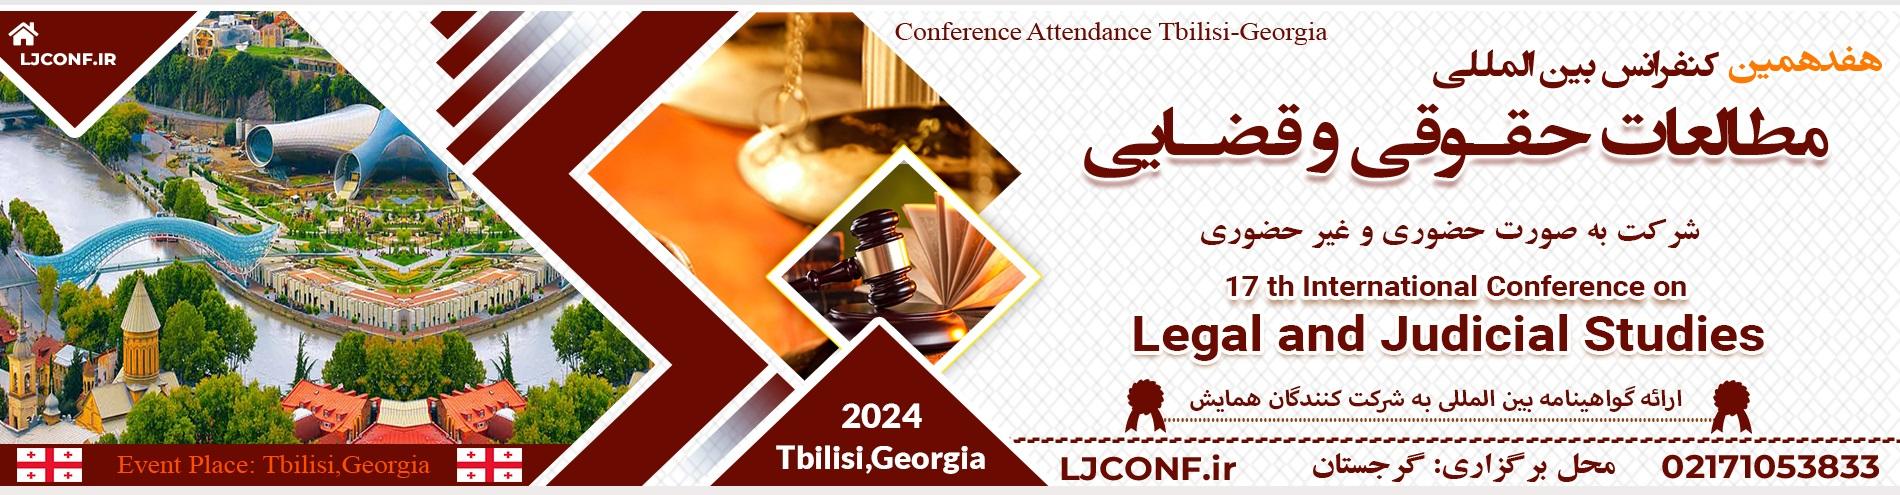 کنفرانس بین المللی مطالعات حقوقی وقضایی